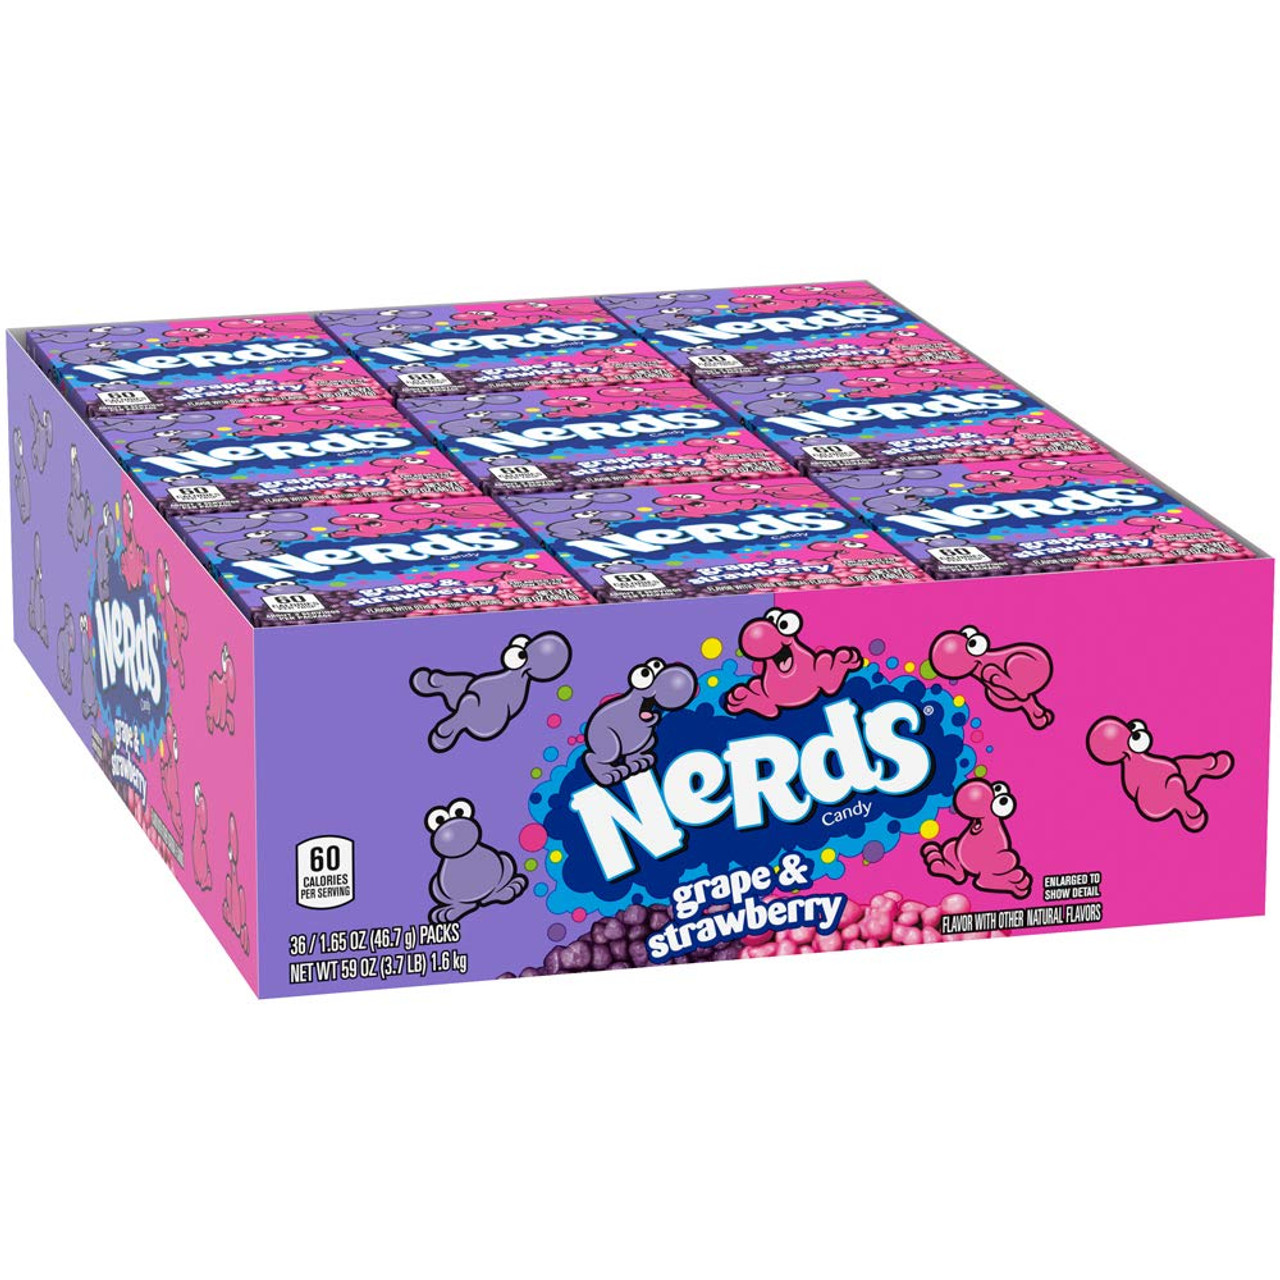 NERDS Grape/Strawberry 12 oz. Bag